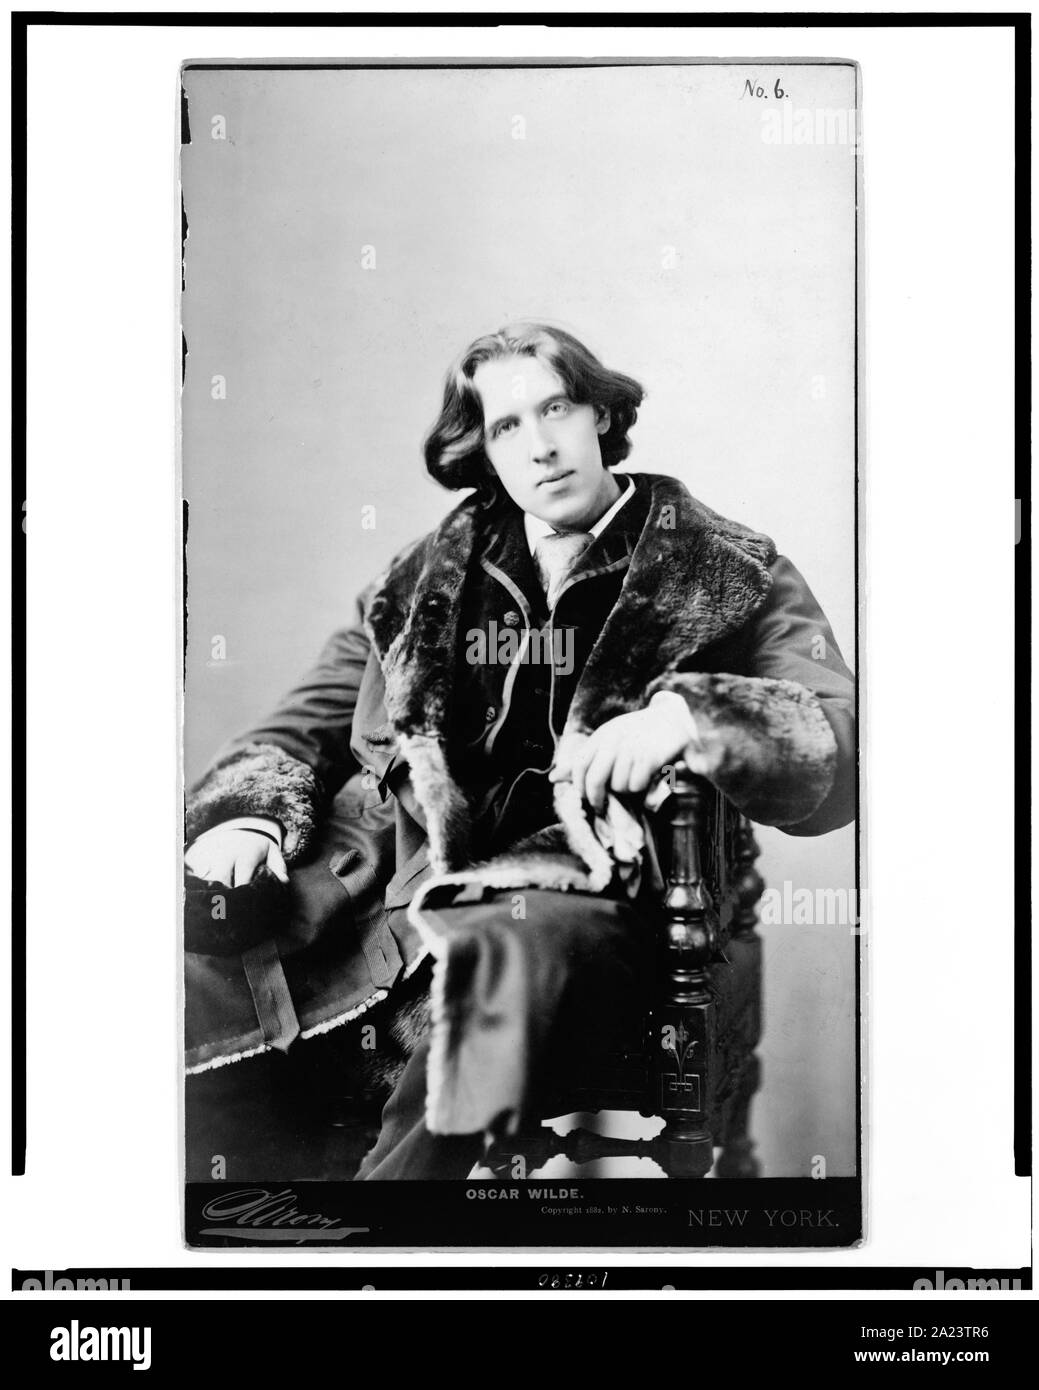 Oscar Wilde / Sarony, New York. Stock Photo